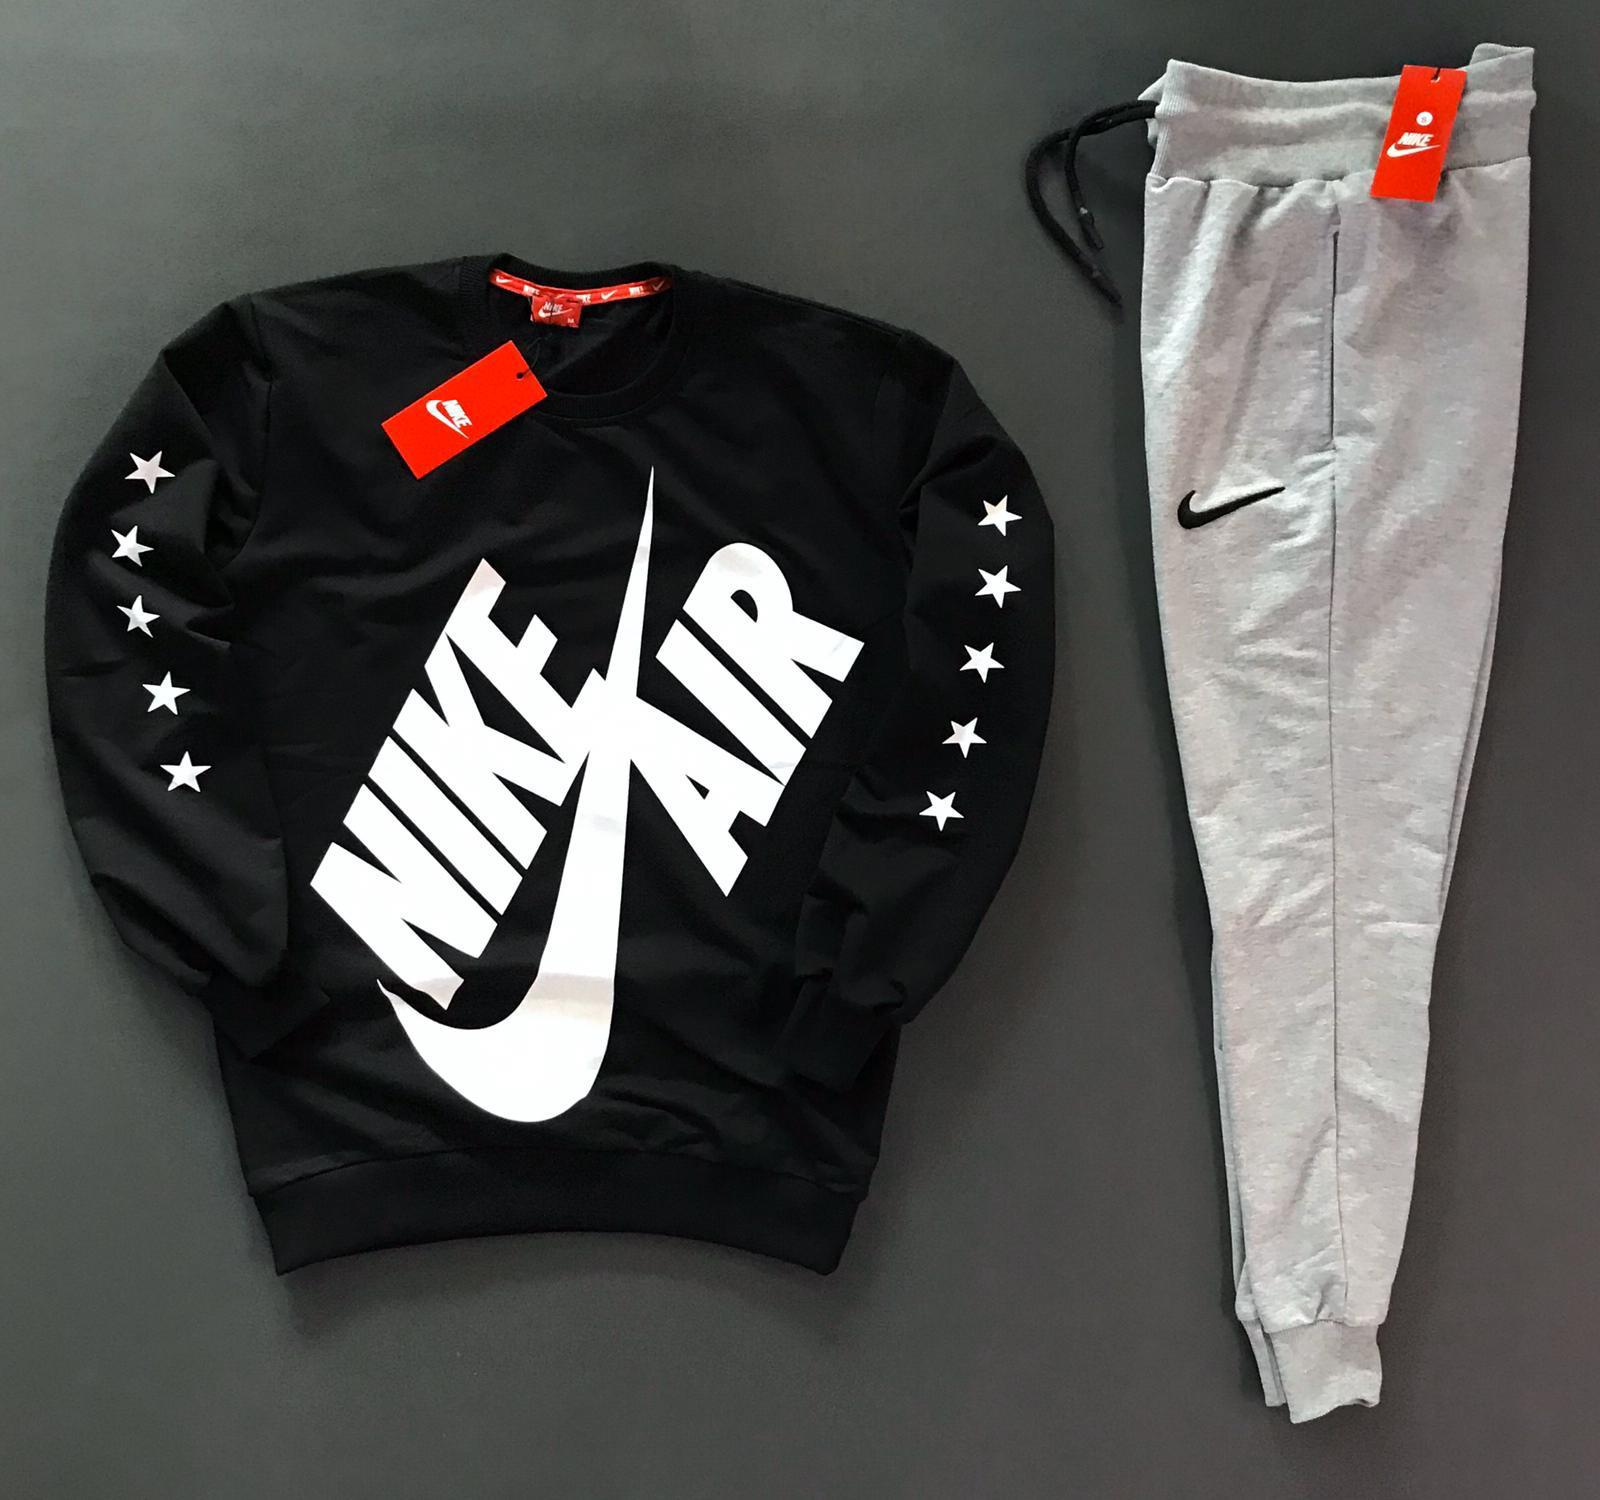 Nike Varios modelos – DeportivasYRopa